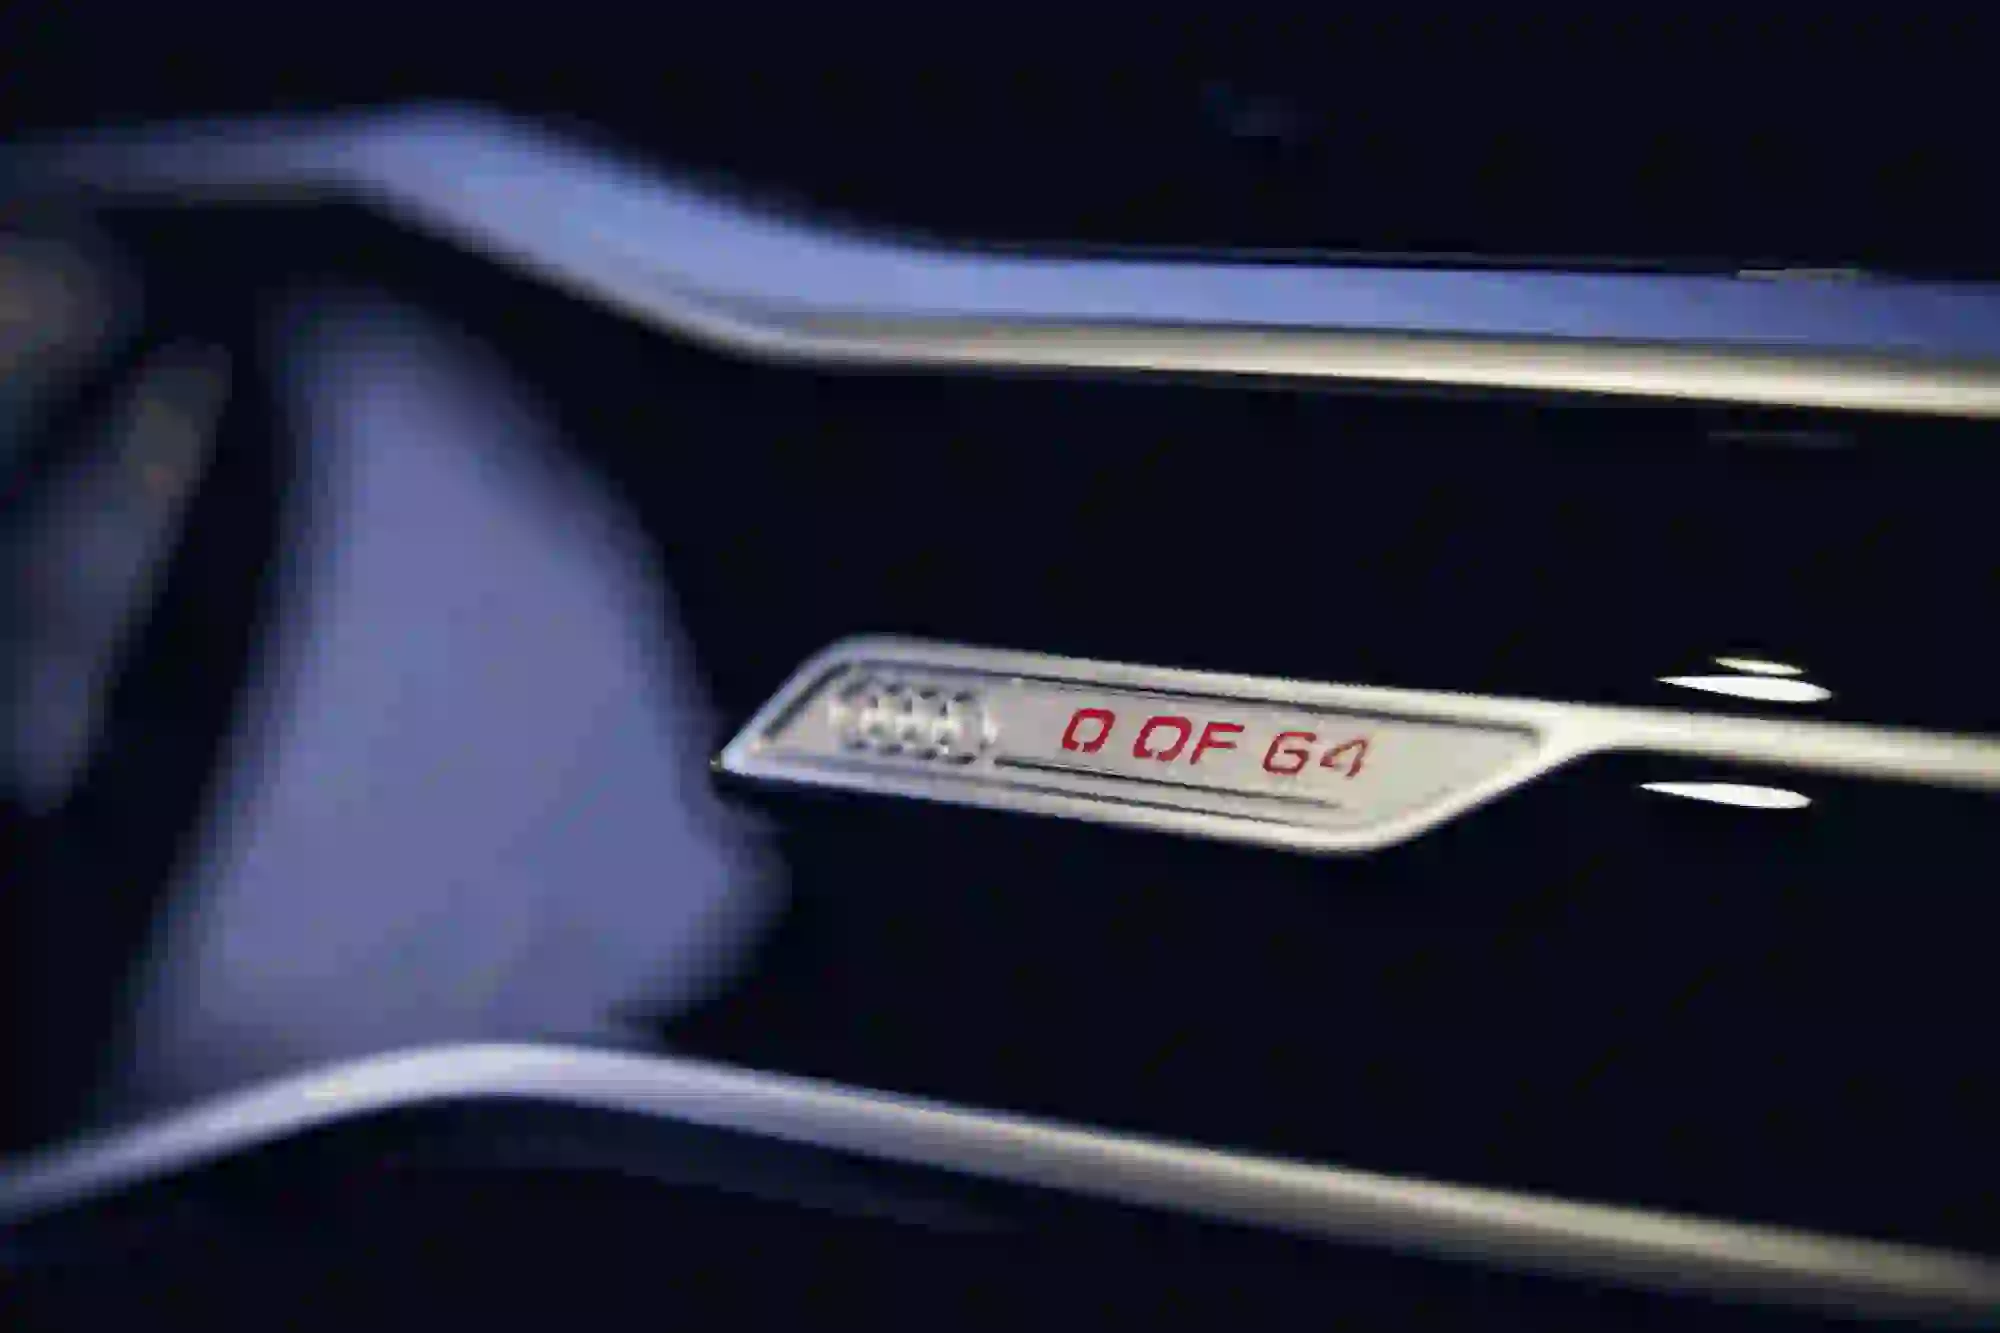 Audi RS 6 Johann Abt Signature Edition - 31